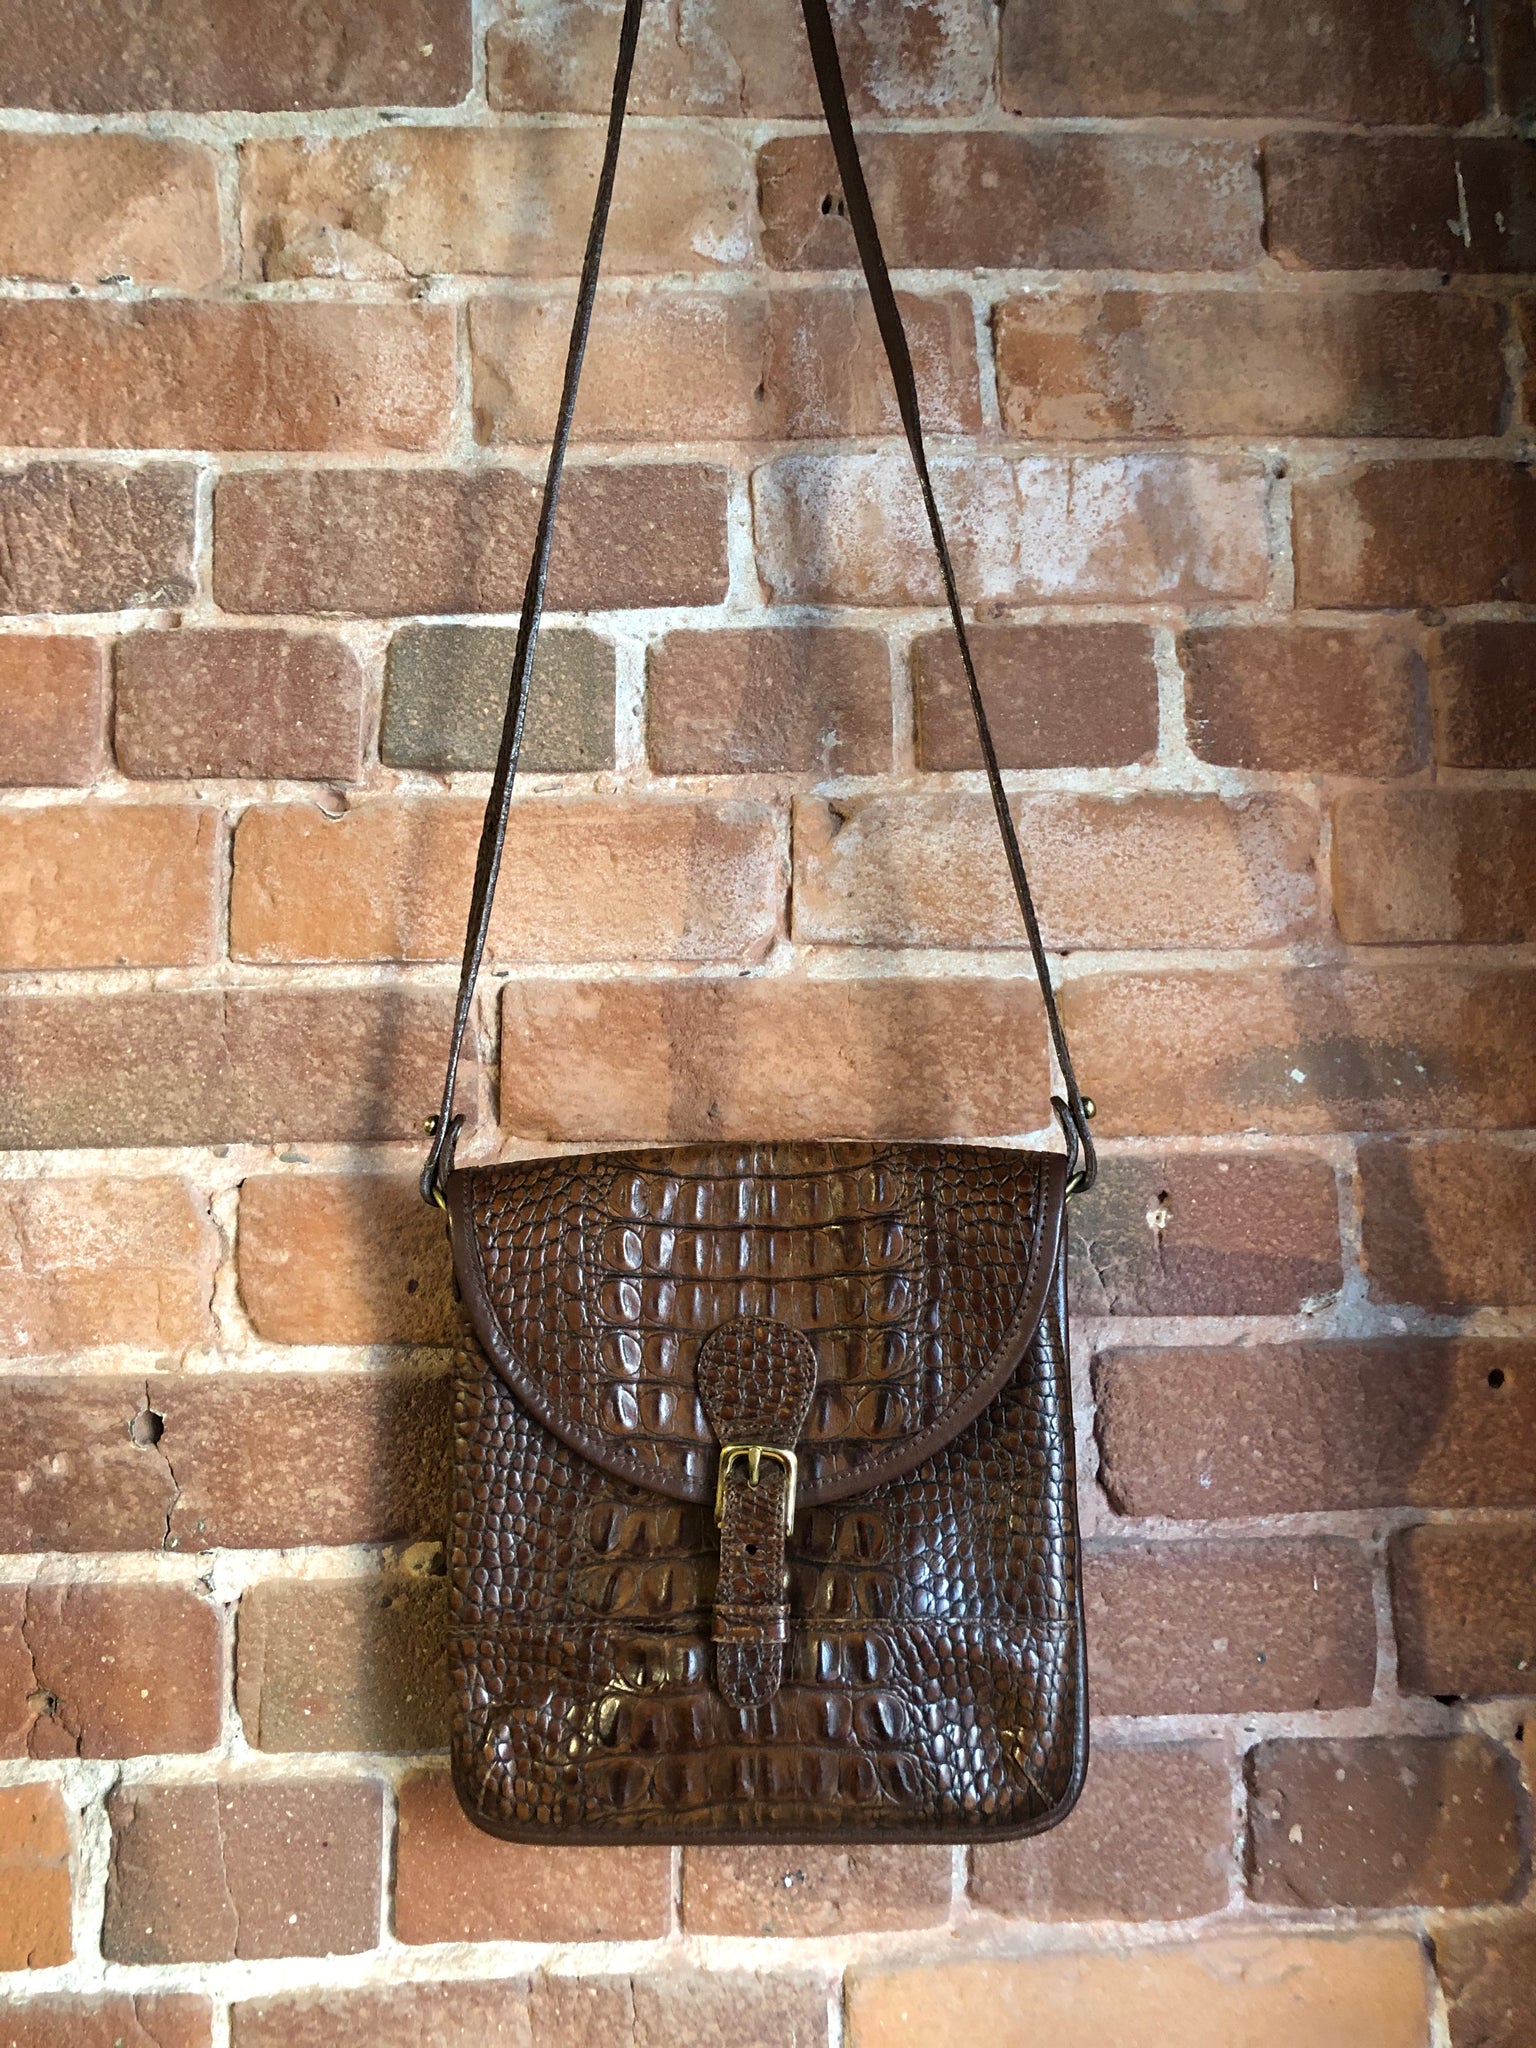 Vintage Brahmin embossed leather crocodile satchel shoulder bag